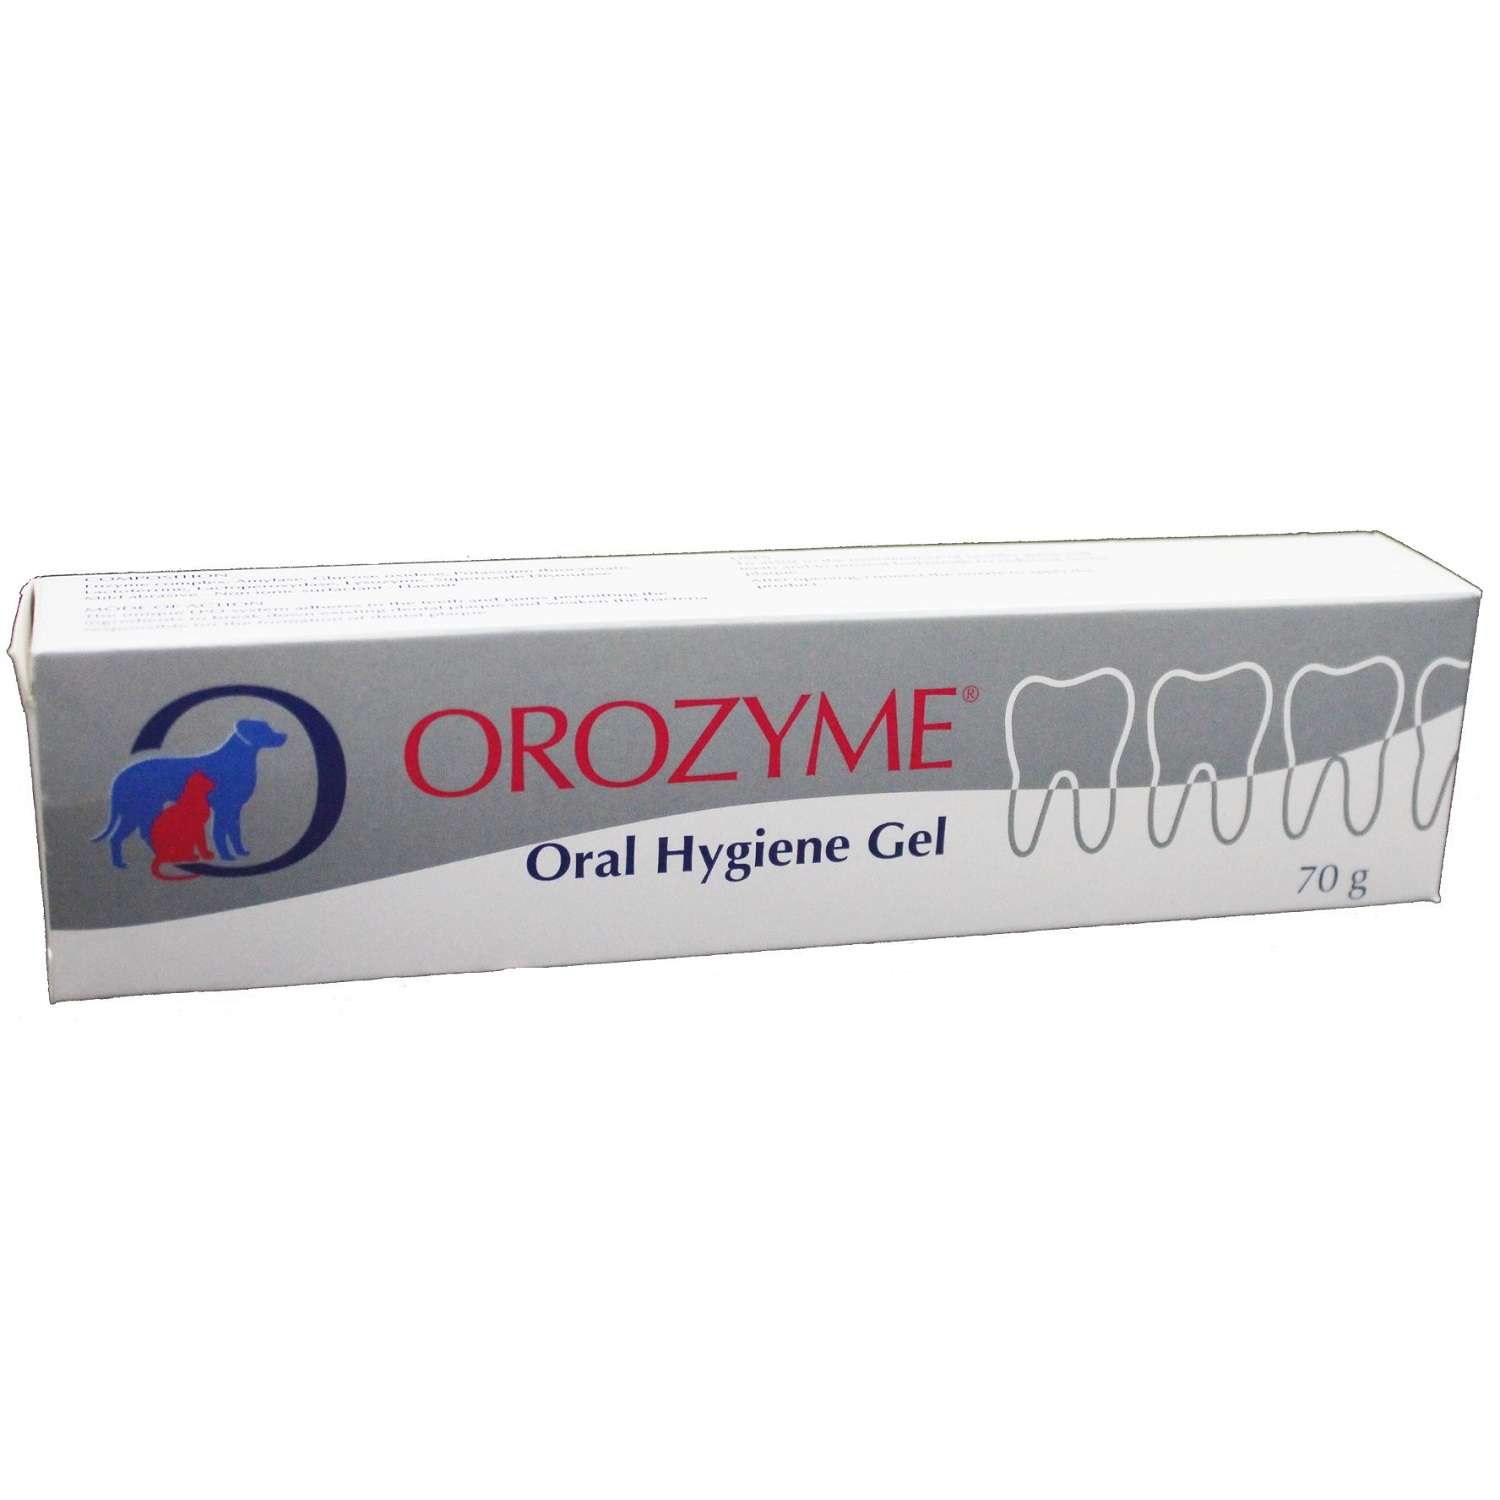 Гель Orozyme гигиенический для полости рта животных - фото 2